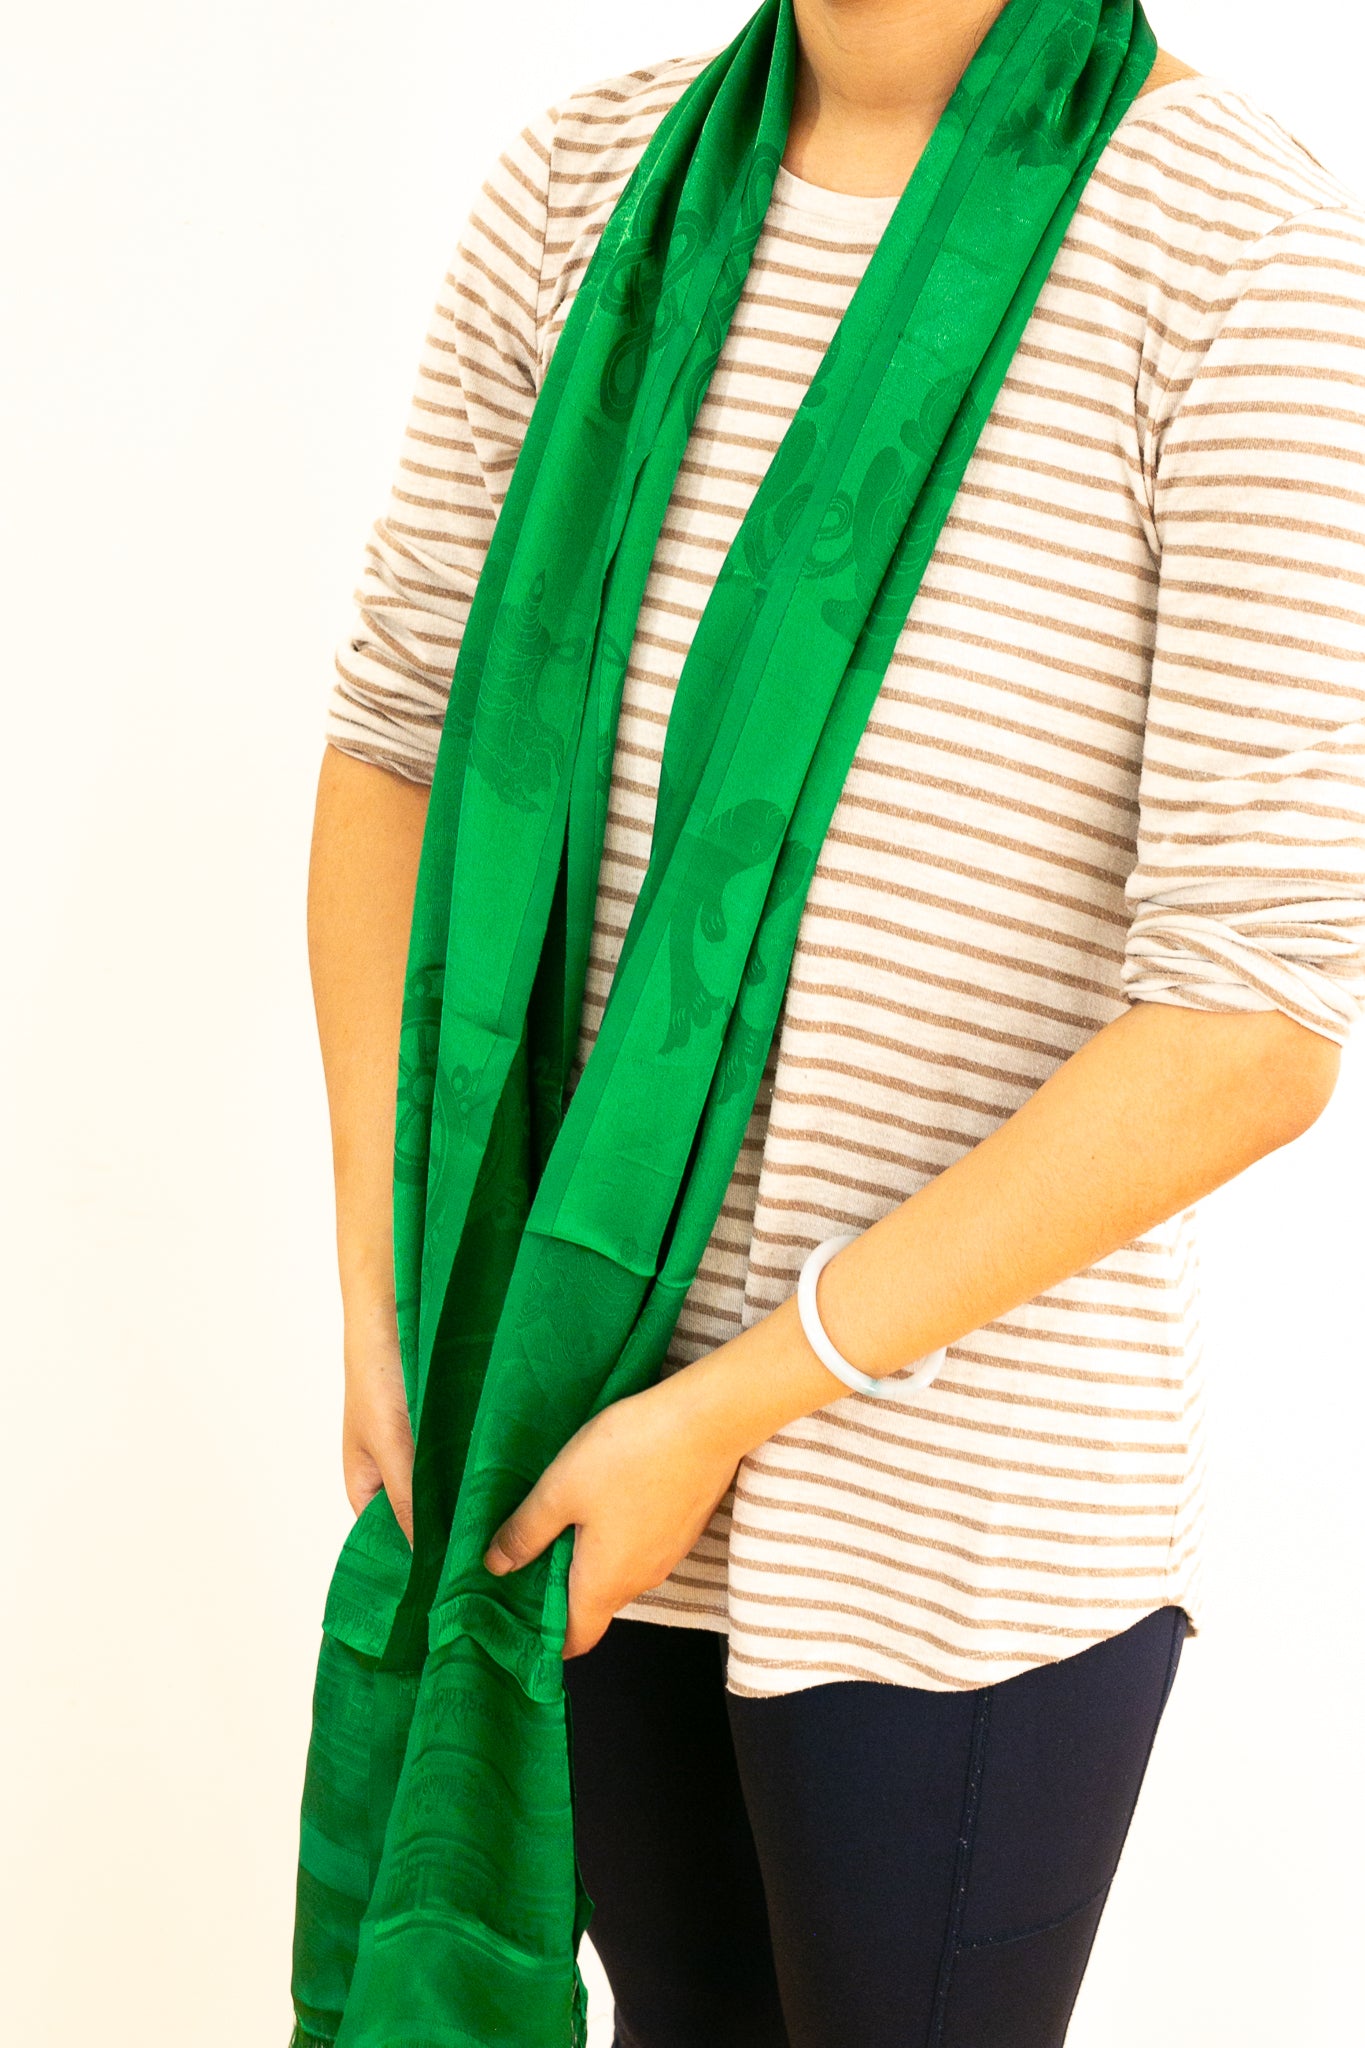 Green khada being worn around the neck